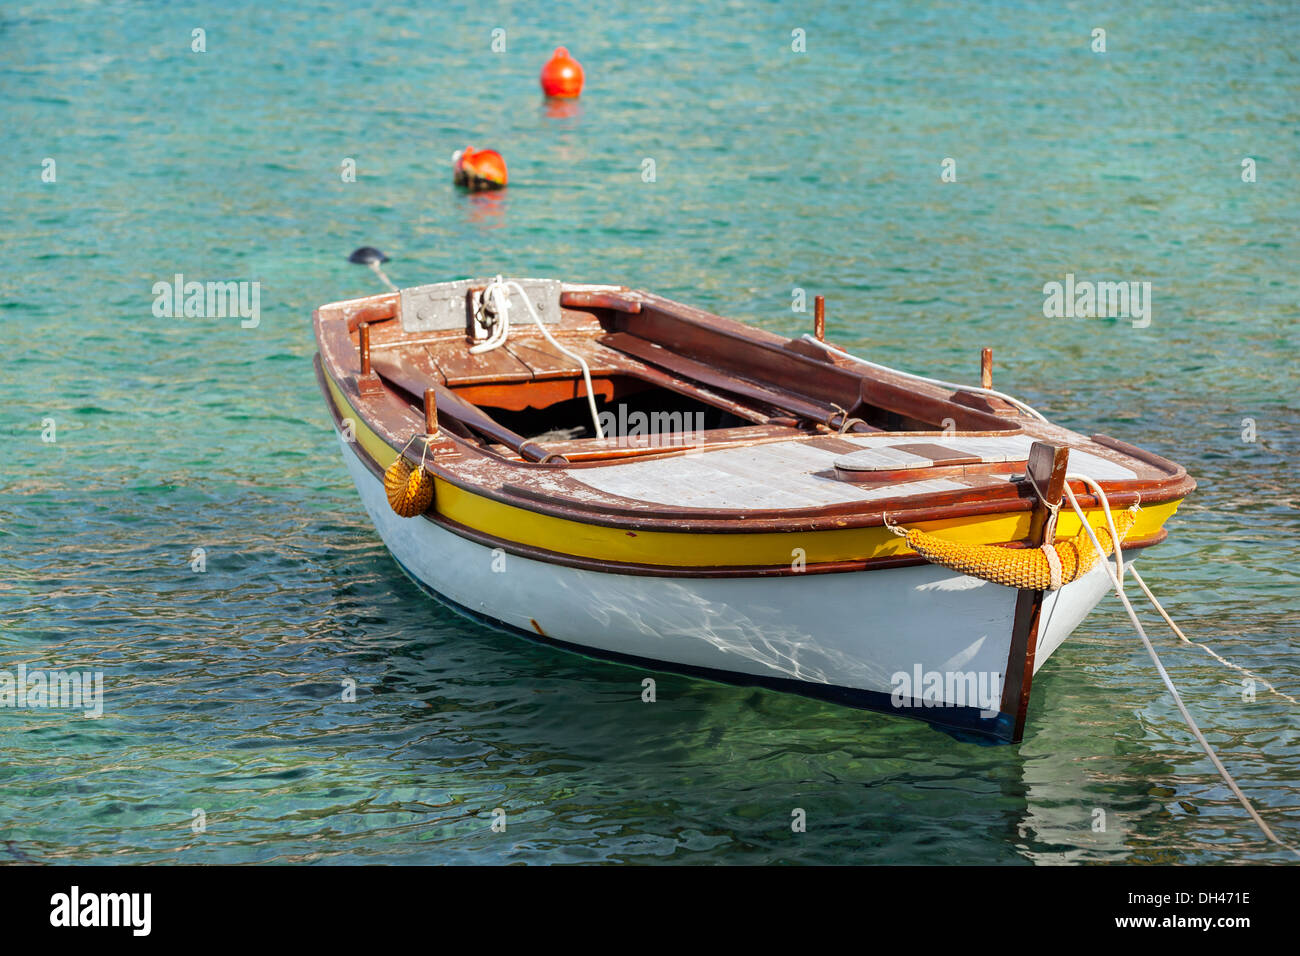 Bateau de pêche en bois flottants amarrés dans l'eau de mer Adriatique, le Monténégro Banque D'Images